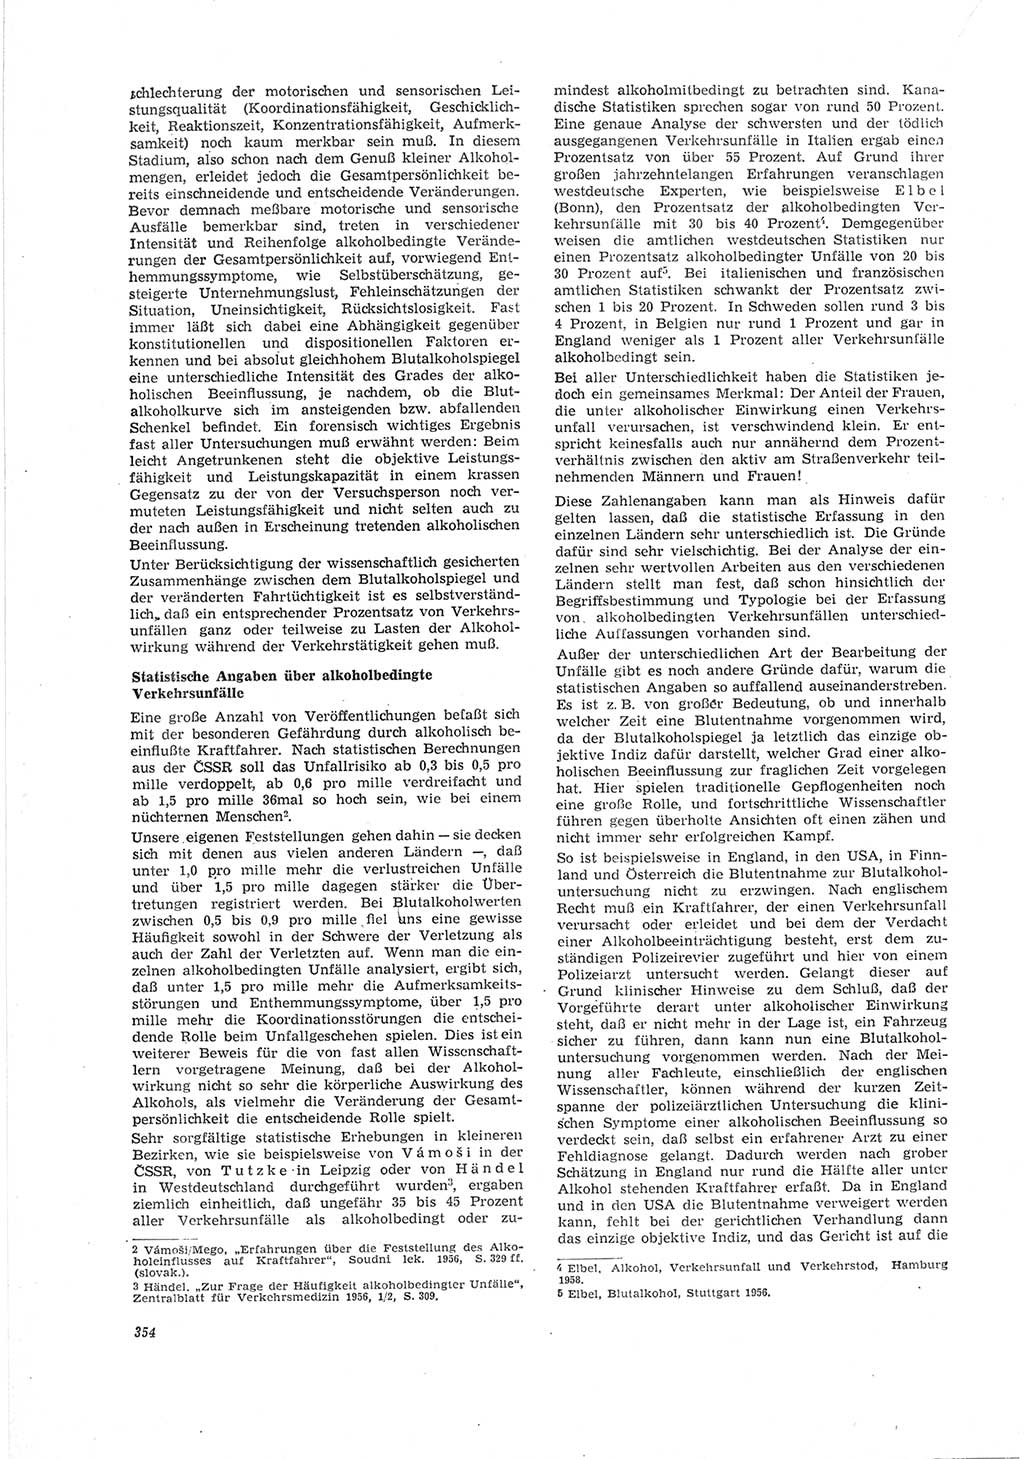 Neue Justiz (NJ), Zeitschrift für Recht und Rechtswissenschaft [Deutsche Demokratische Republik (DDR)], 19. Jahrgang 1965, Seite 354 (NJ DDR 1965, S. 354)